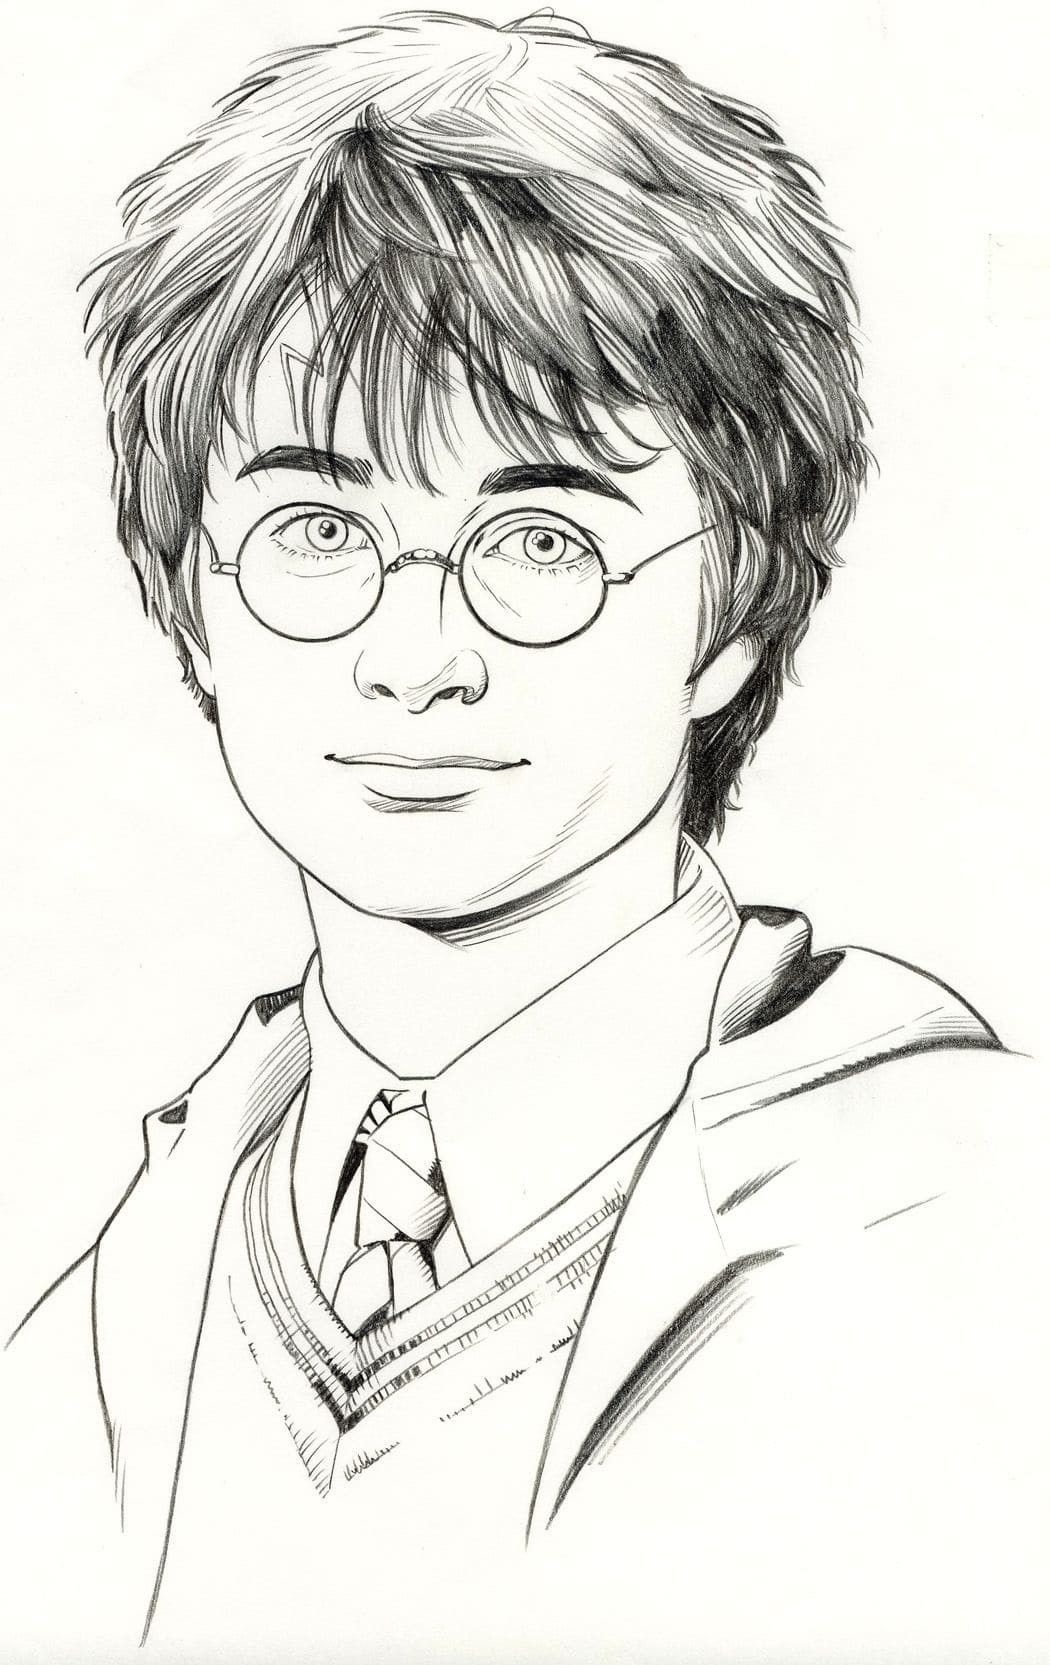 Гарри Поттер рисунок карандашом